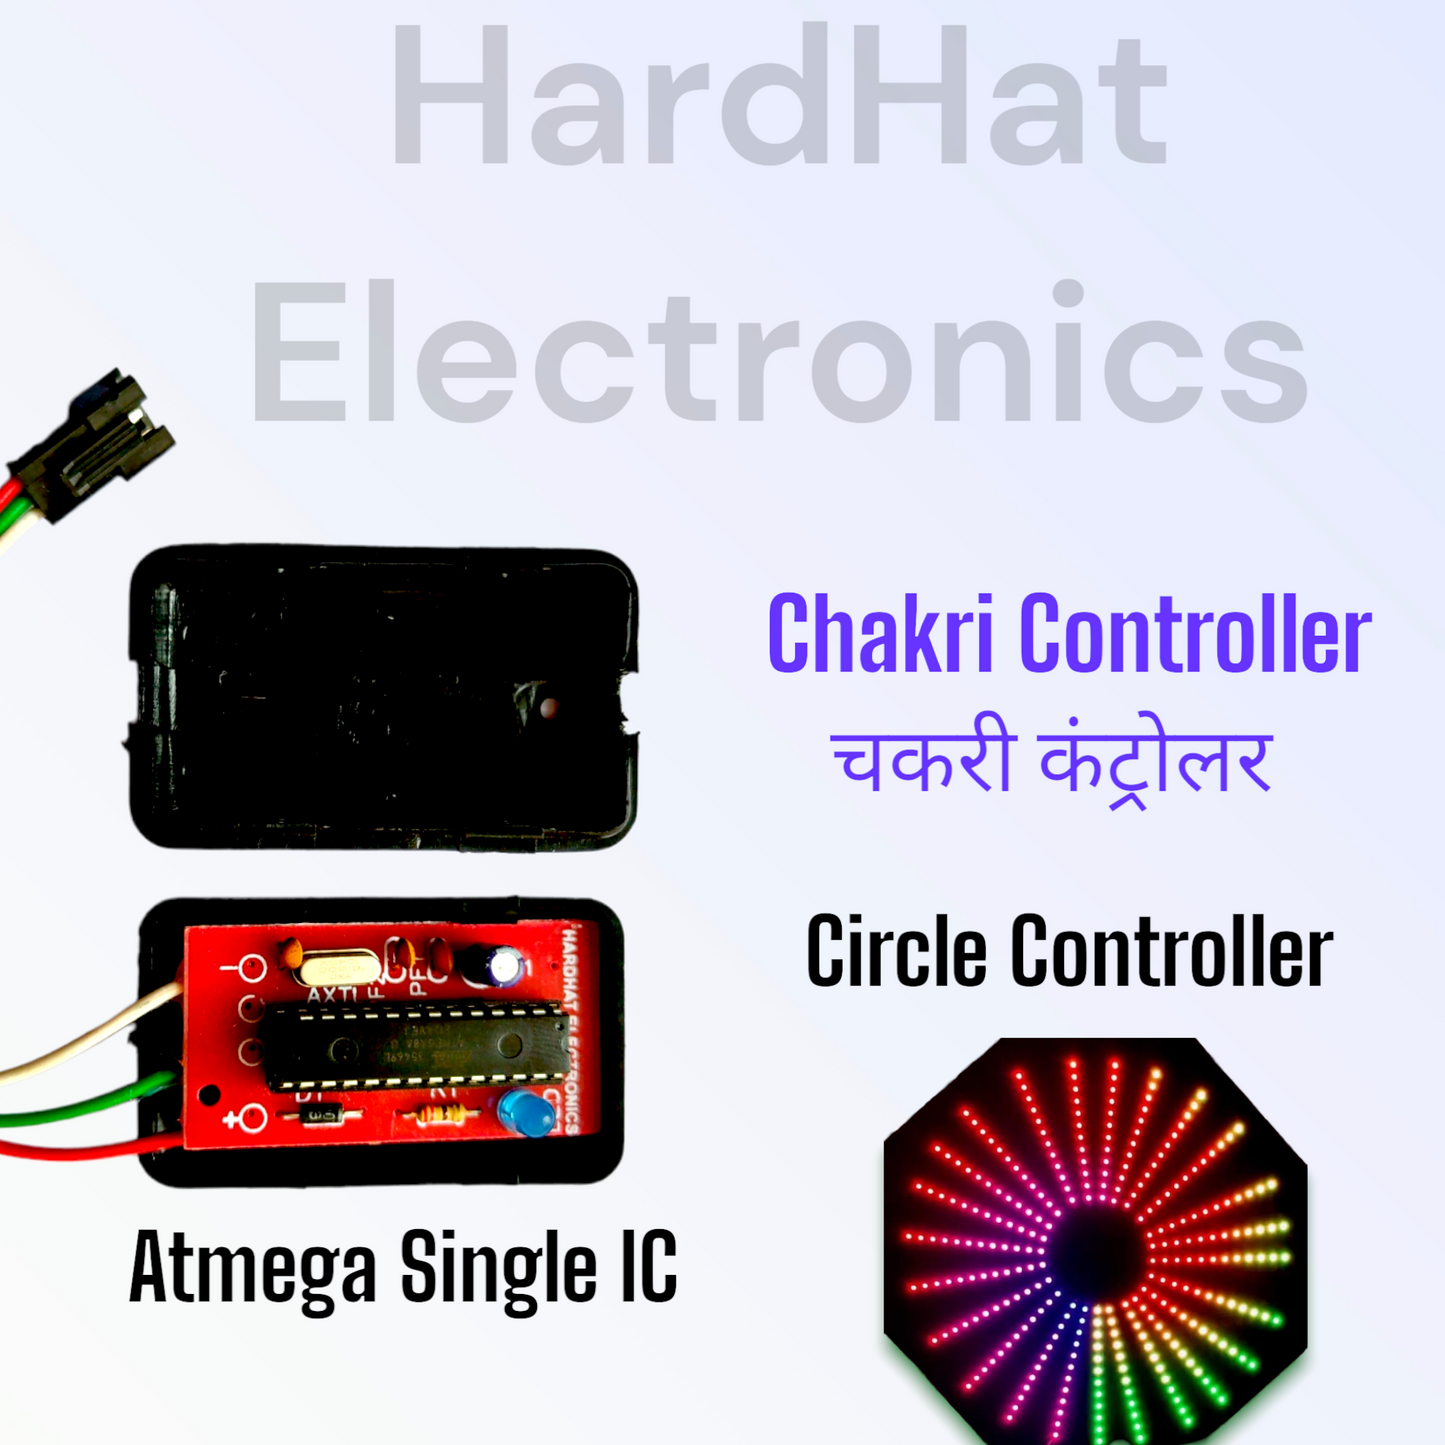 Chakri Controller Single IC (Atmega8A)